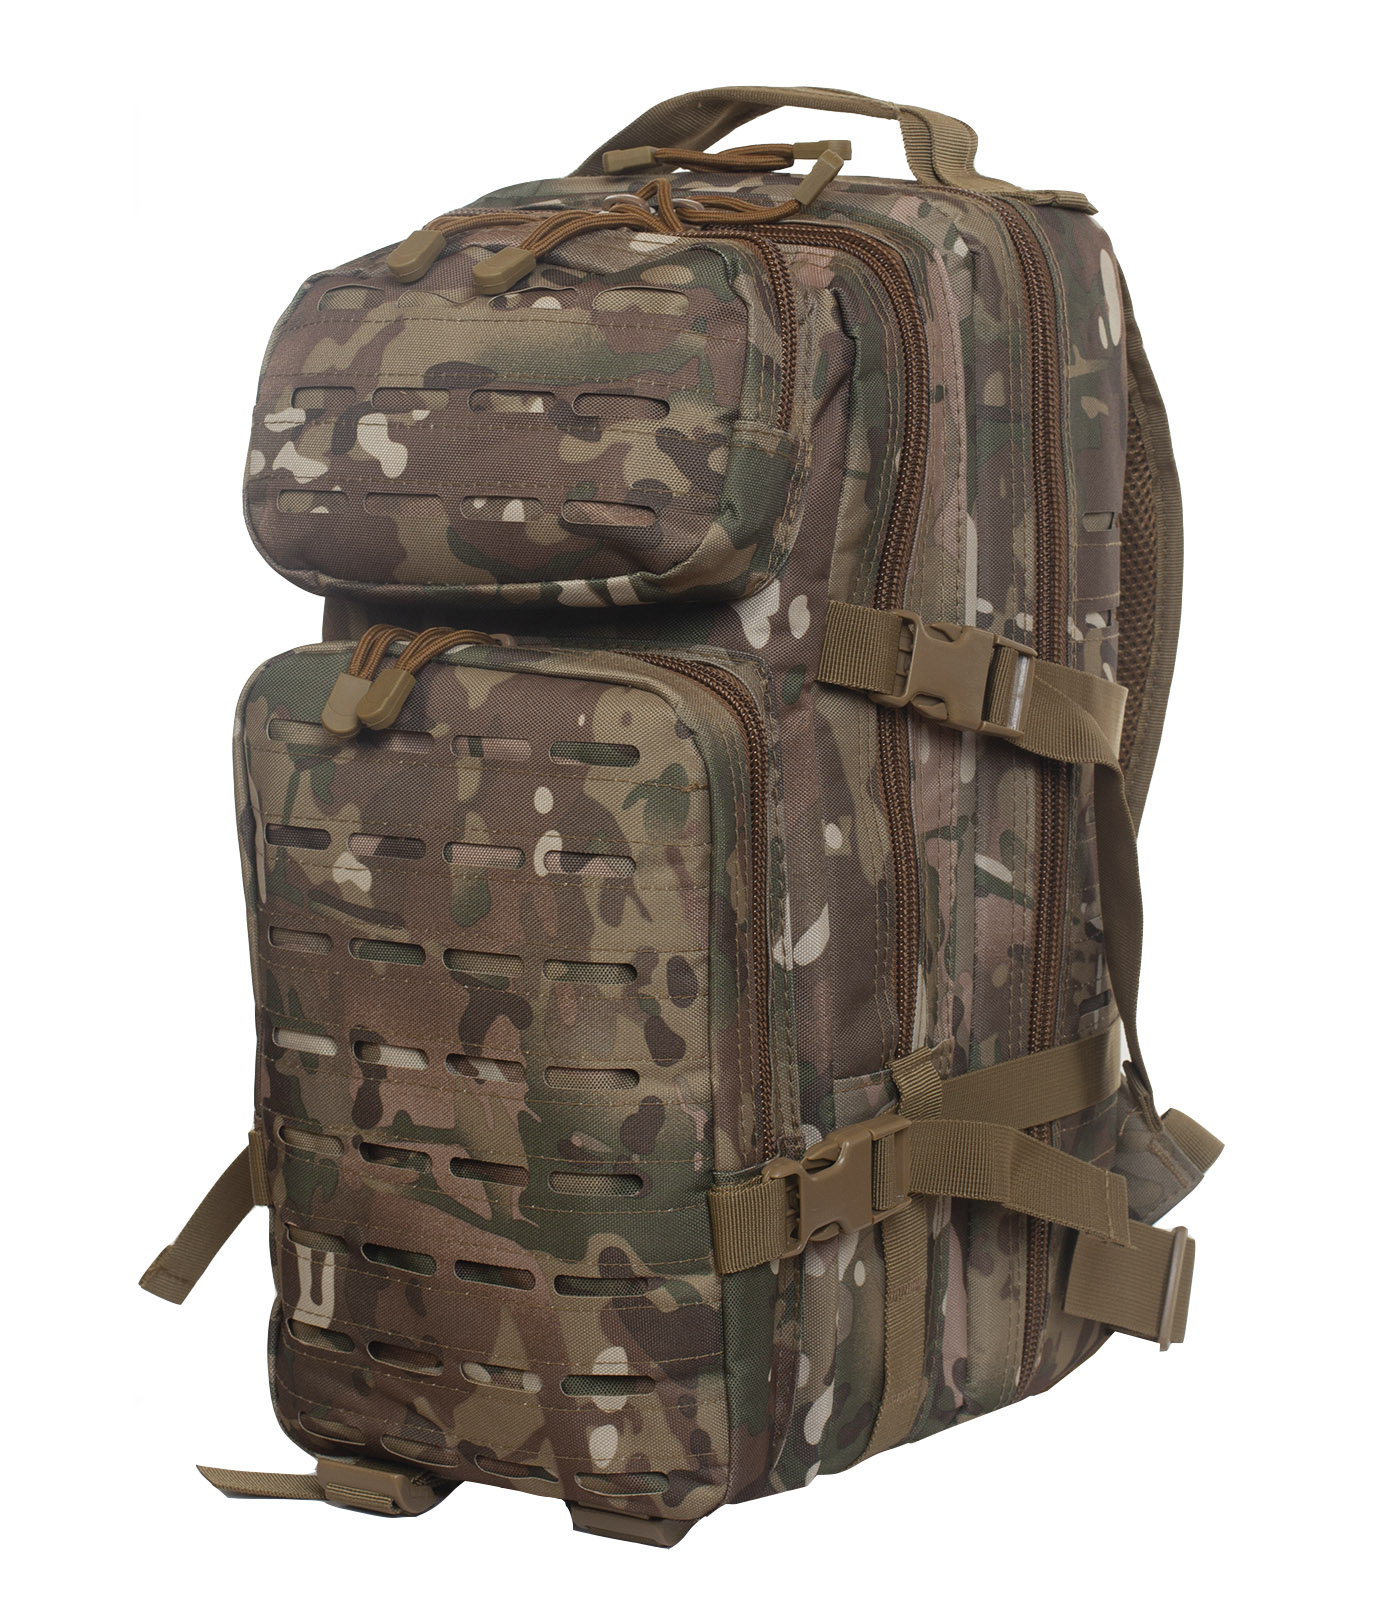 Армейский штурмовой рюкзак камуфляжа Multicam - заказать онлайн